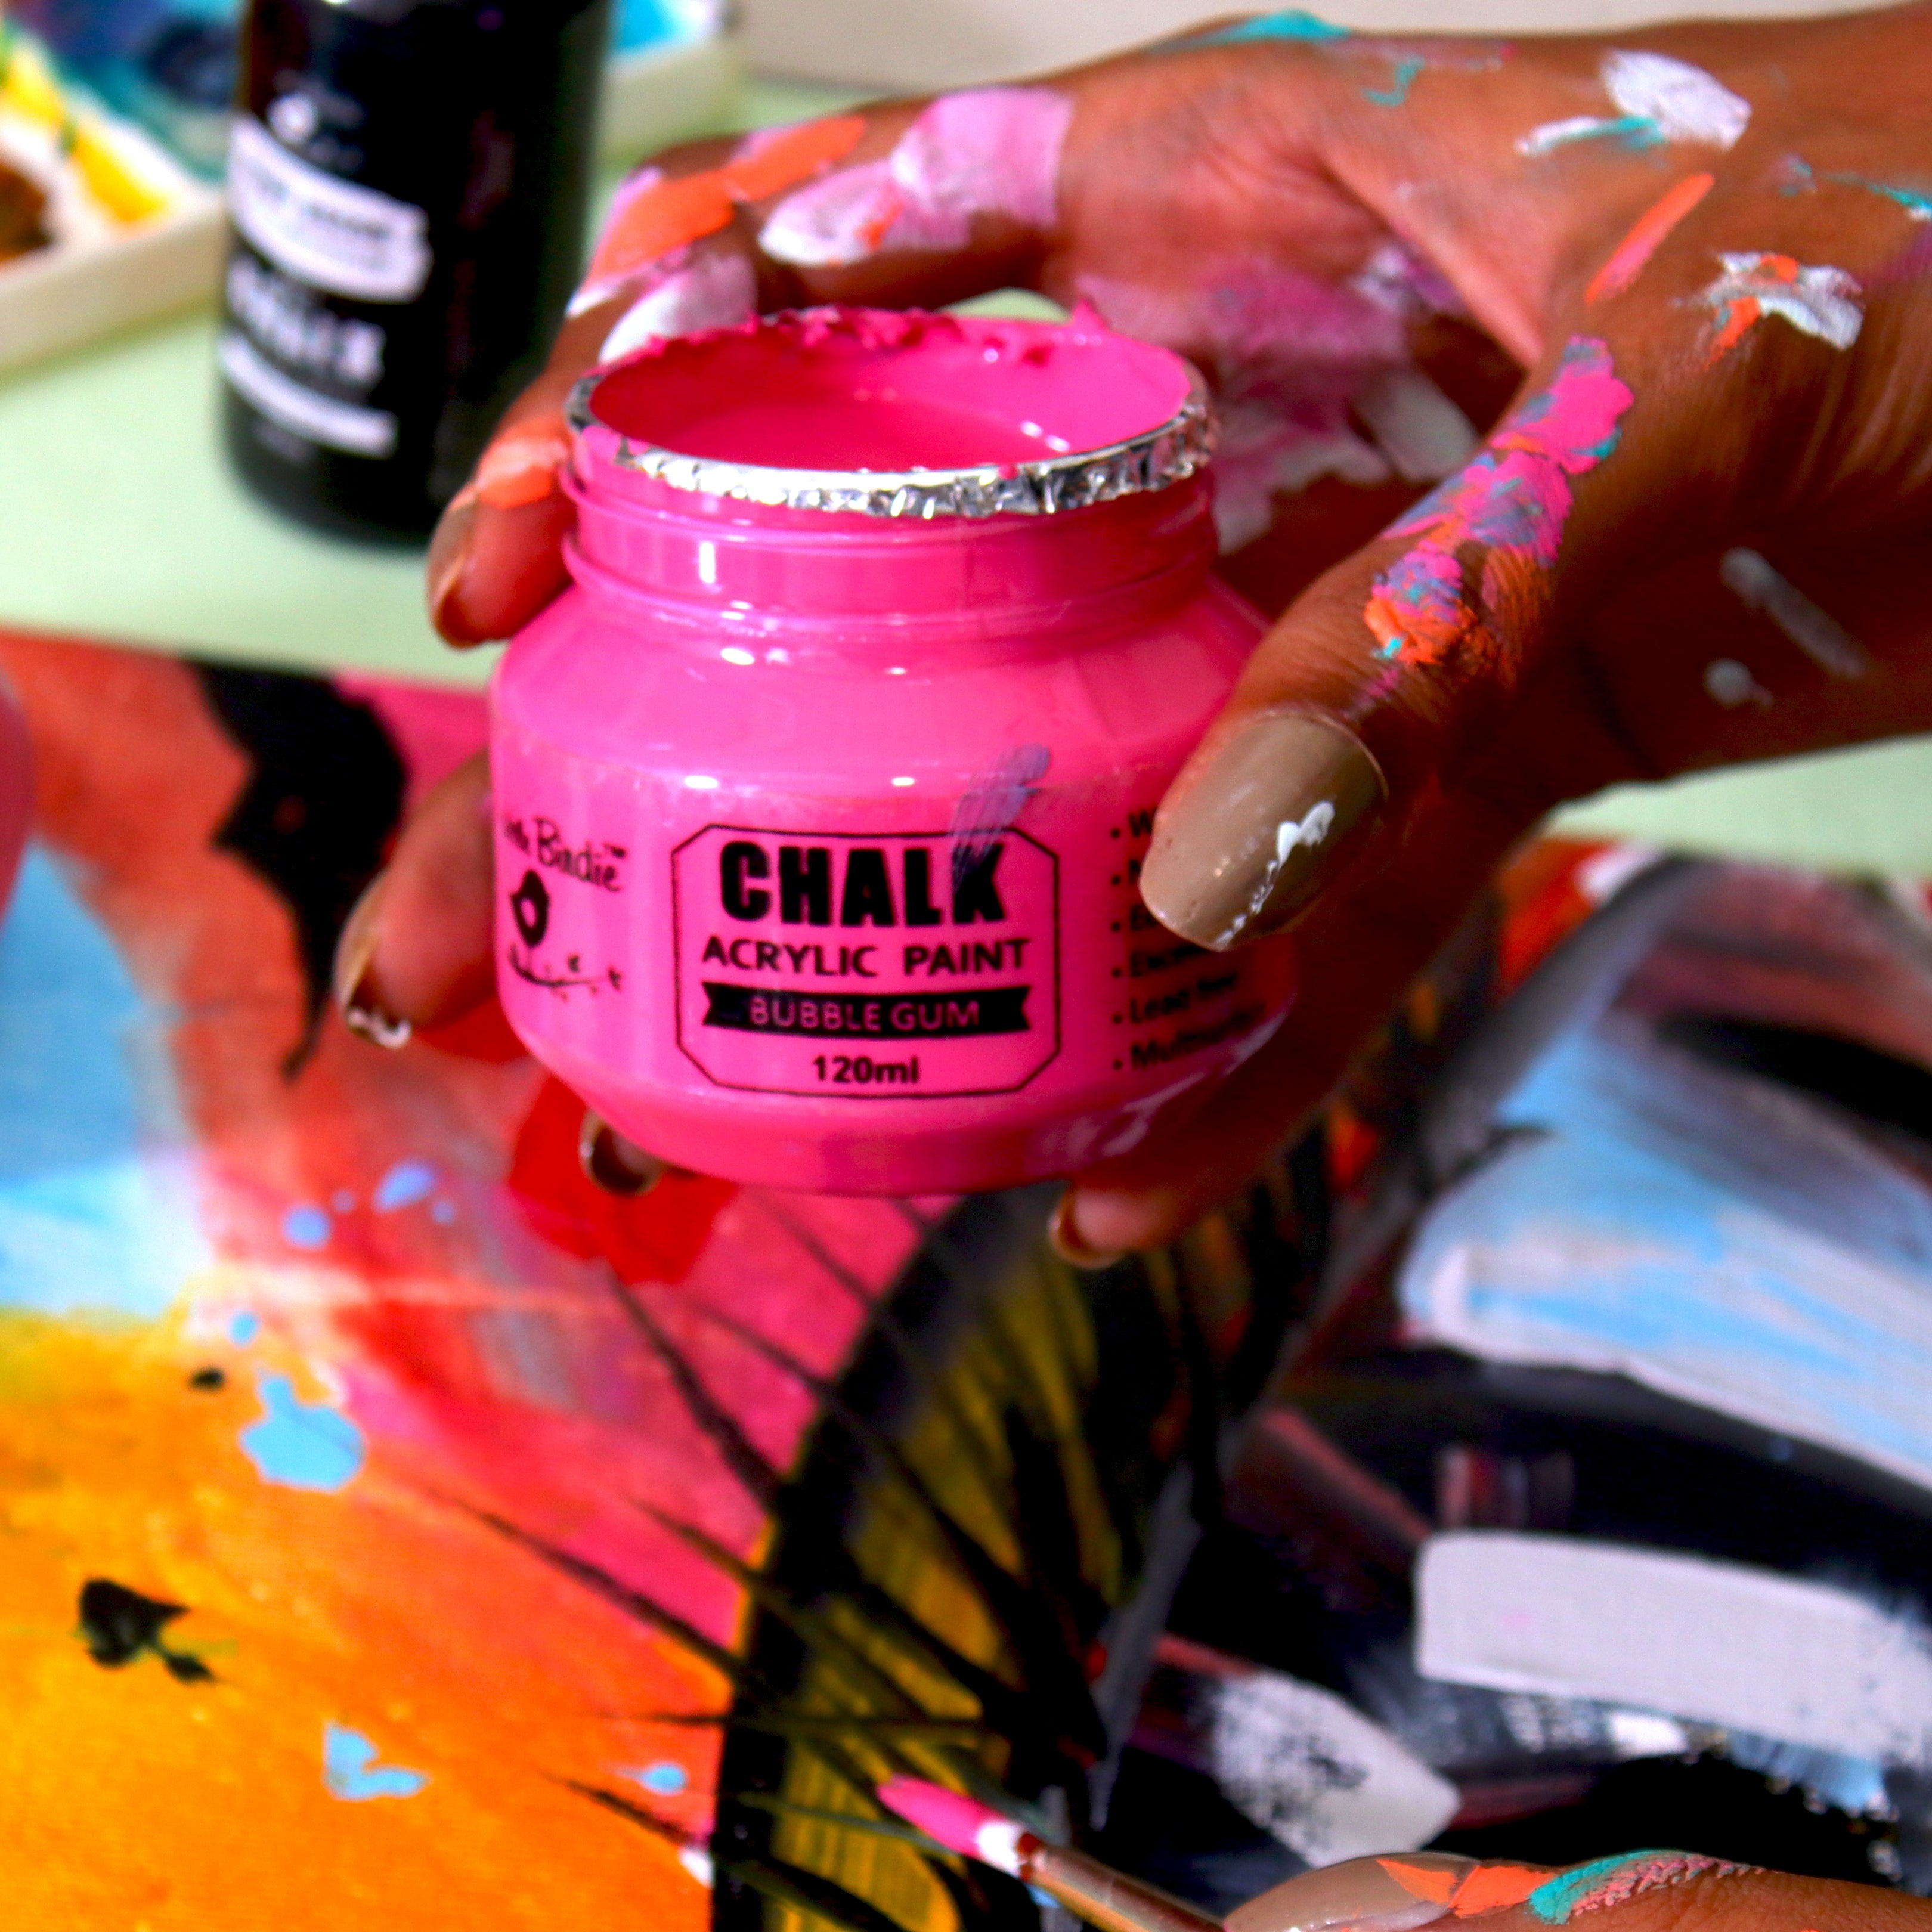 Home Decor Chalk Paint Butternut Squash 120ml Bottle